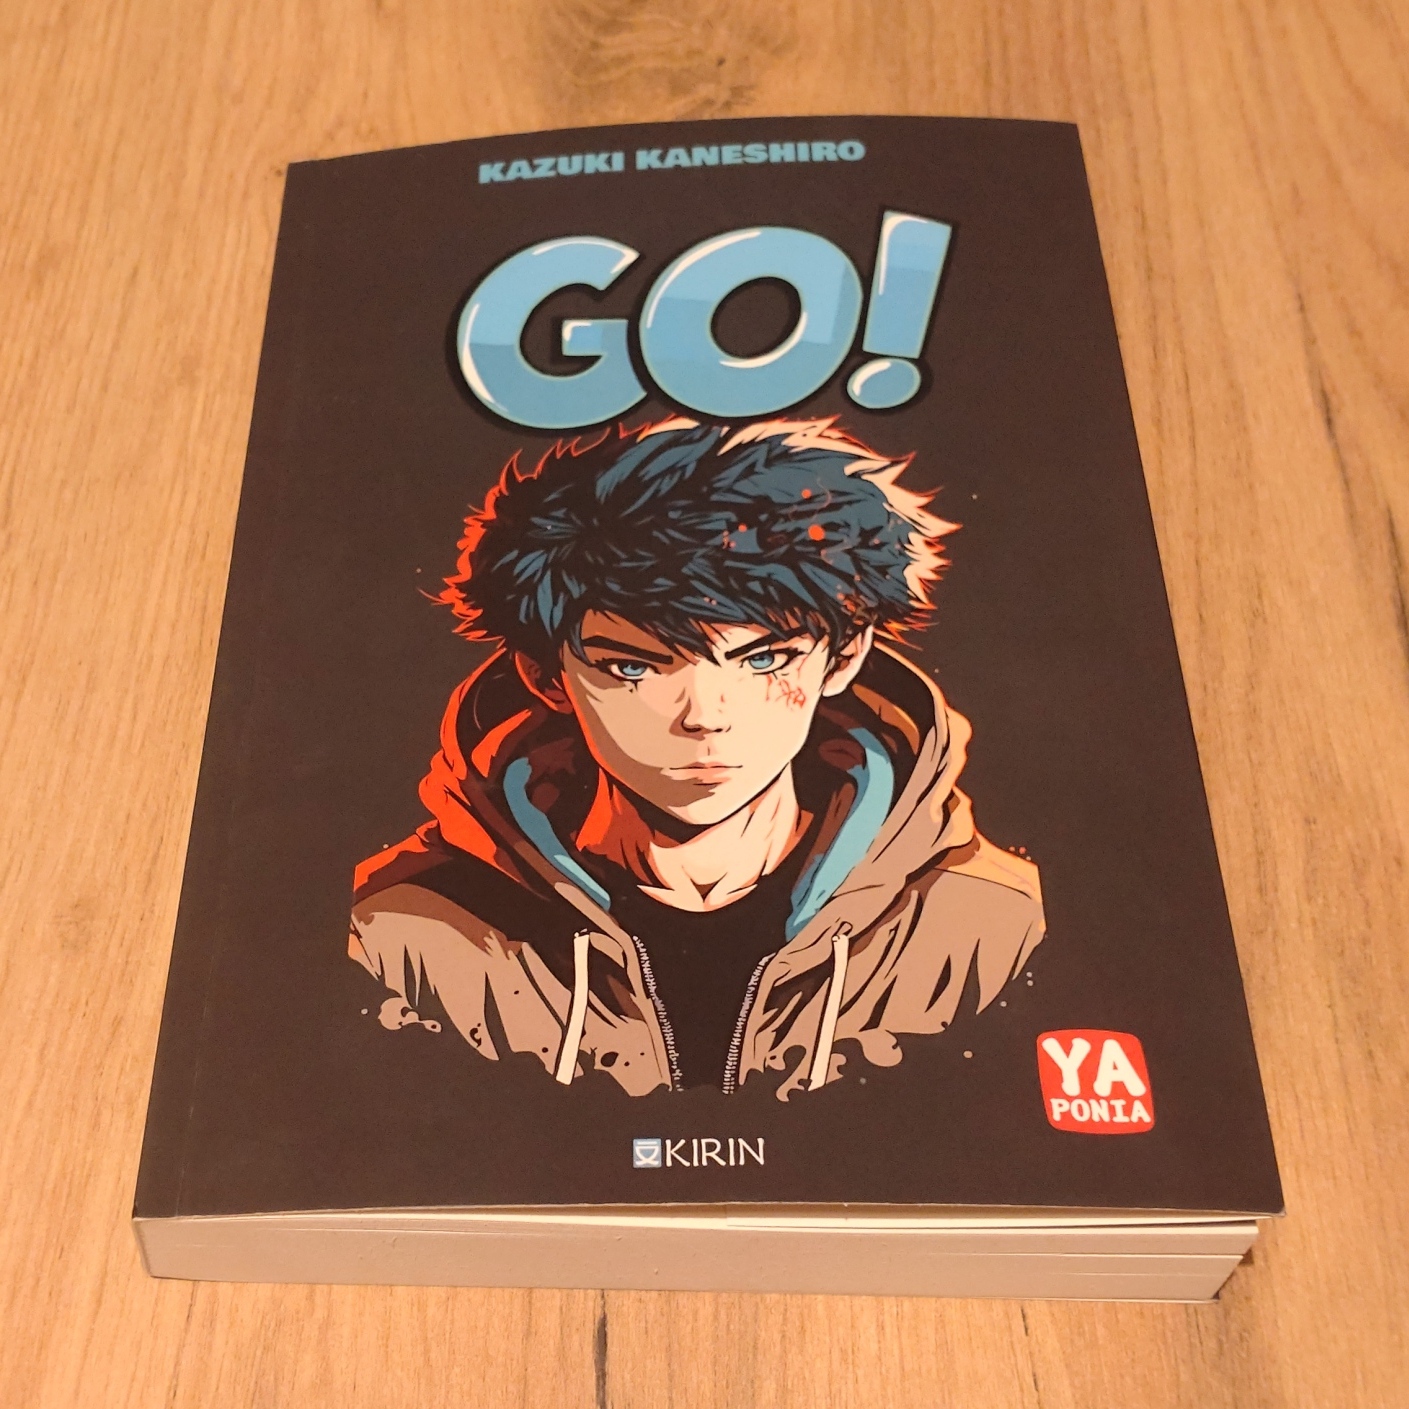 Kazuki Kaneshiro - "Go!"